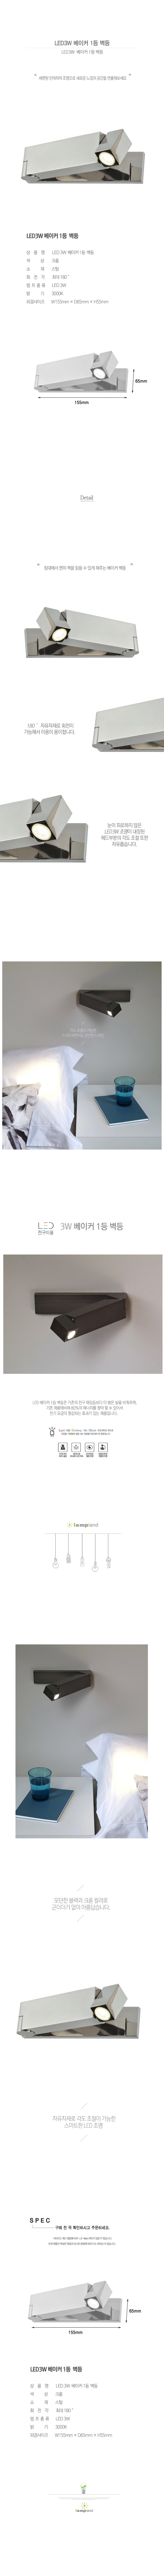 [LED3W] 베이커 1등 벽등